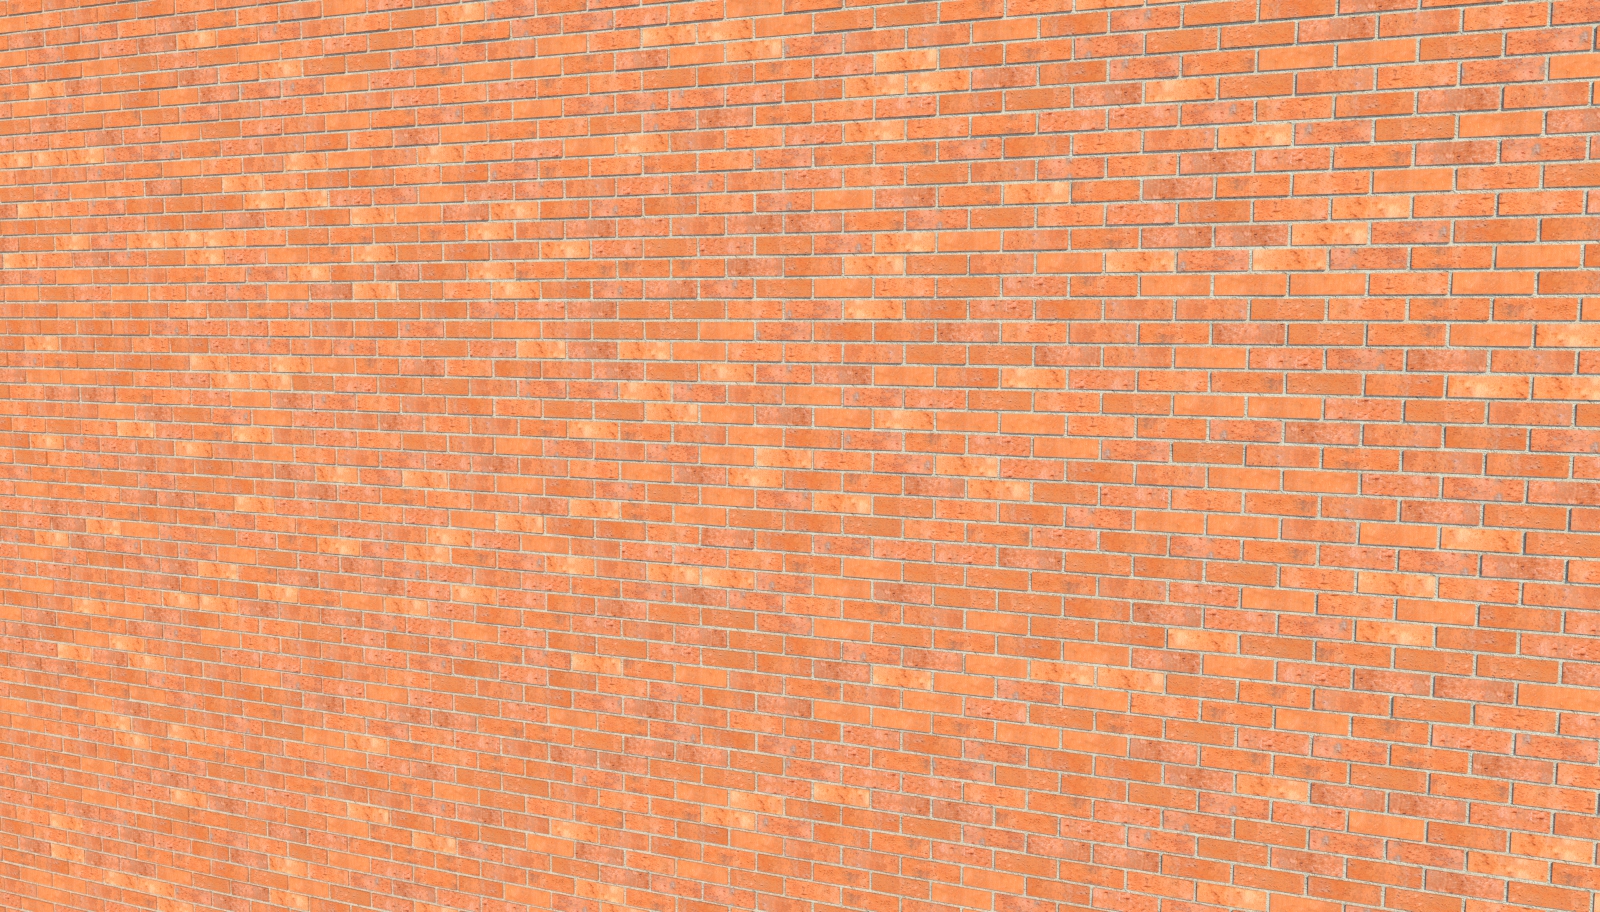 Bricks01.jpg